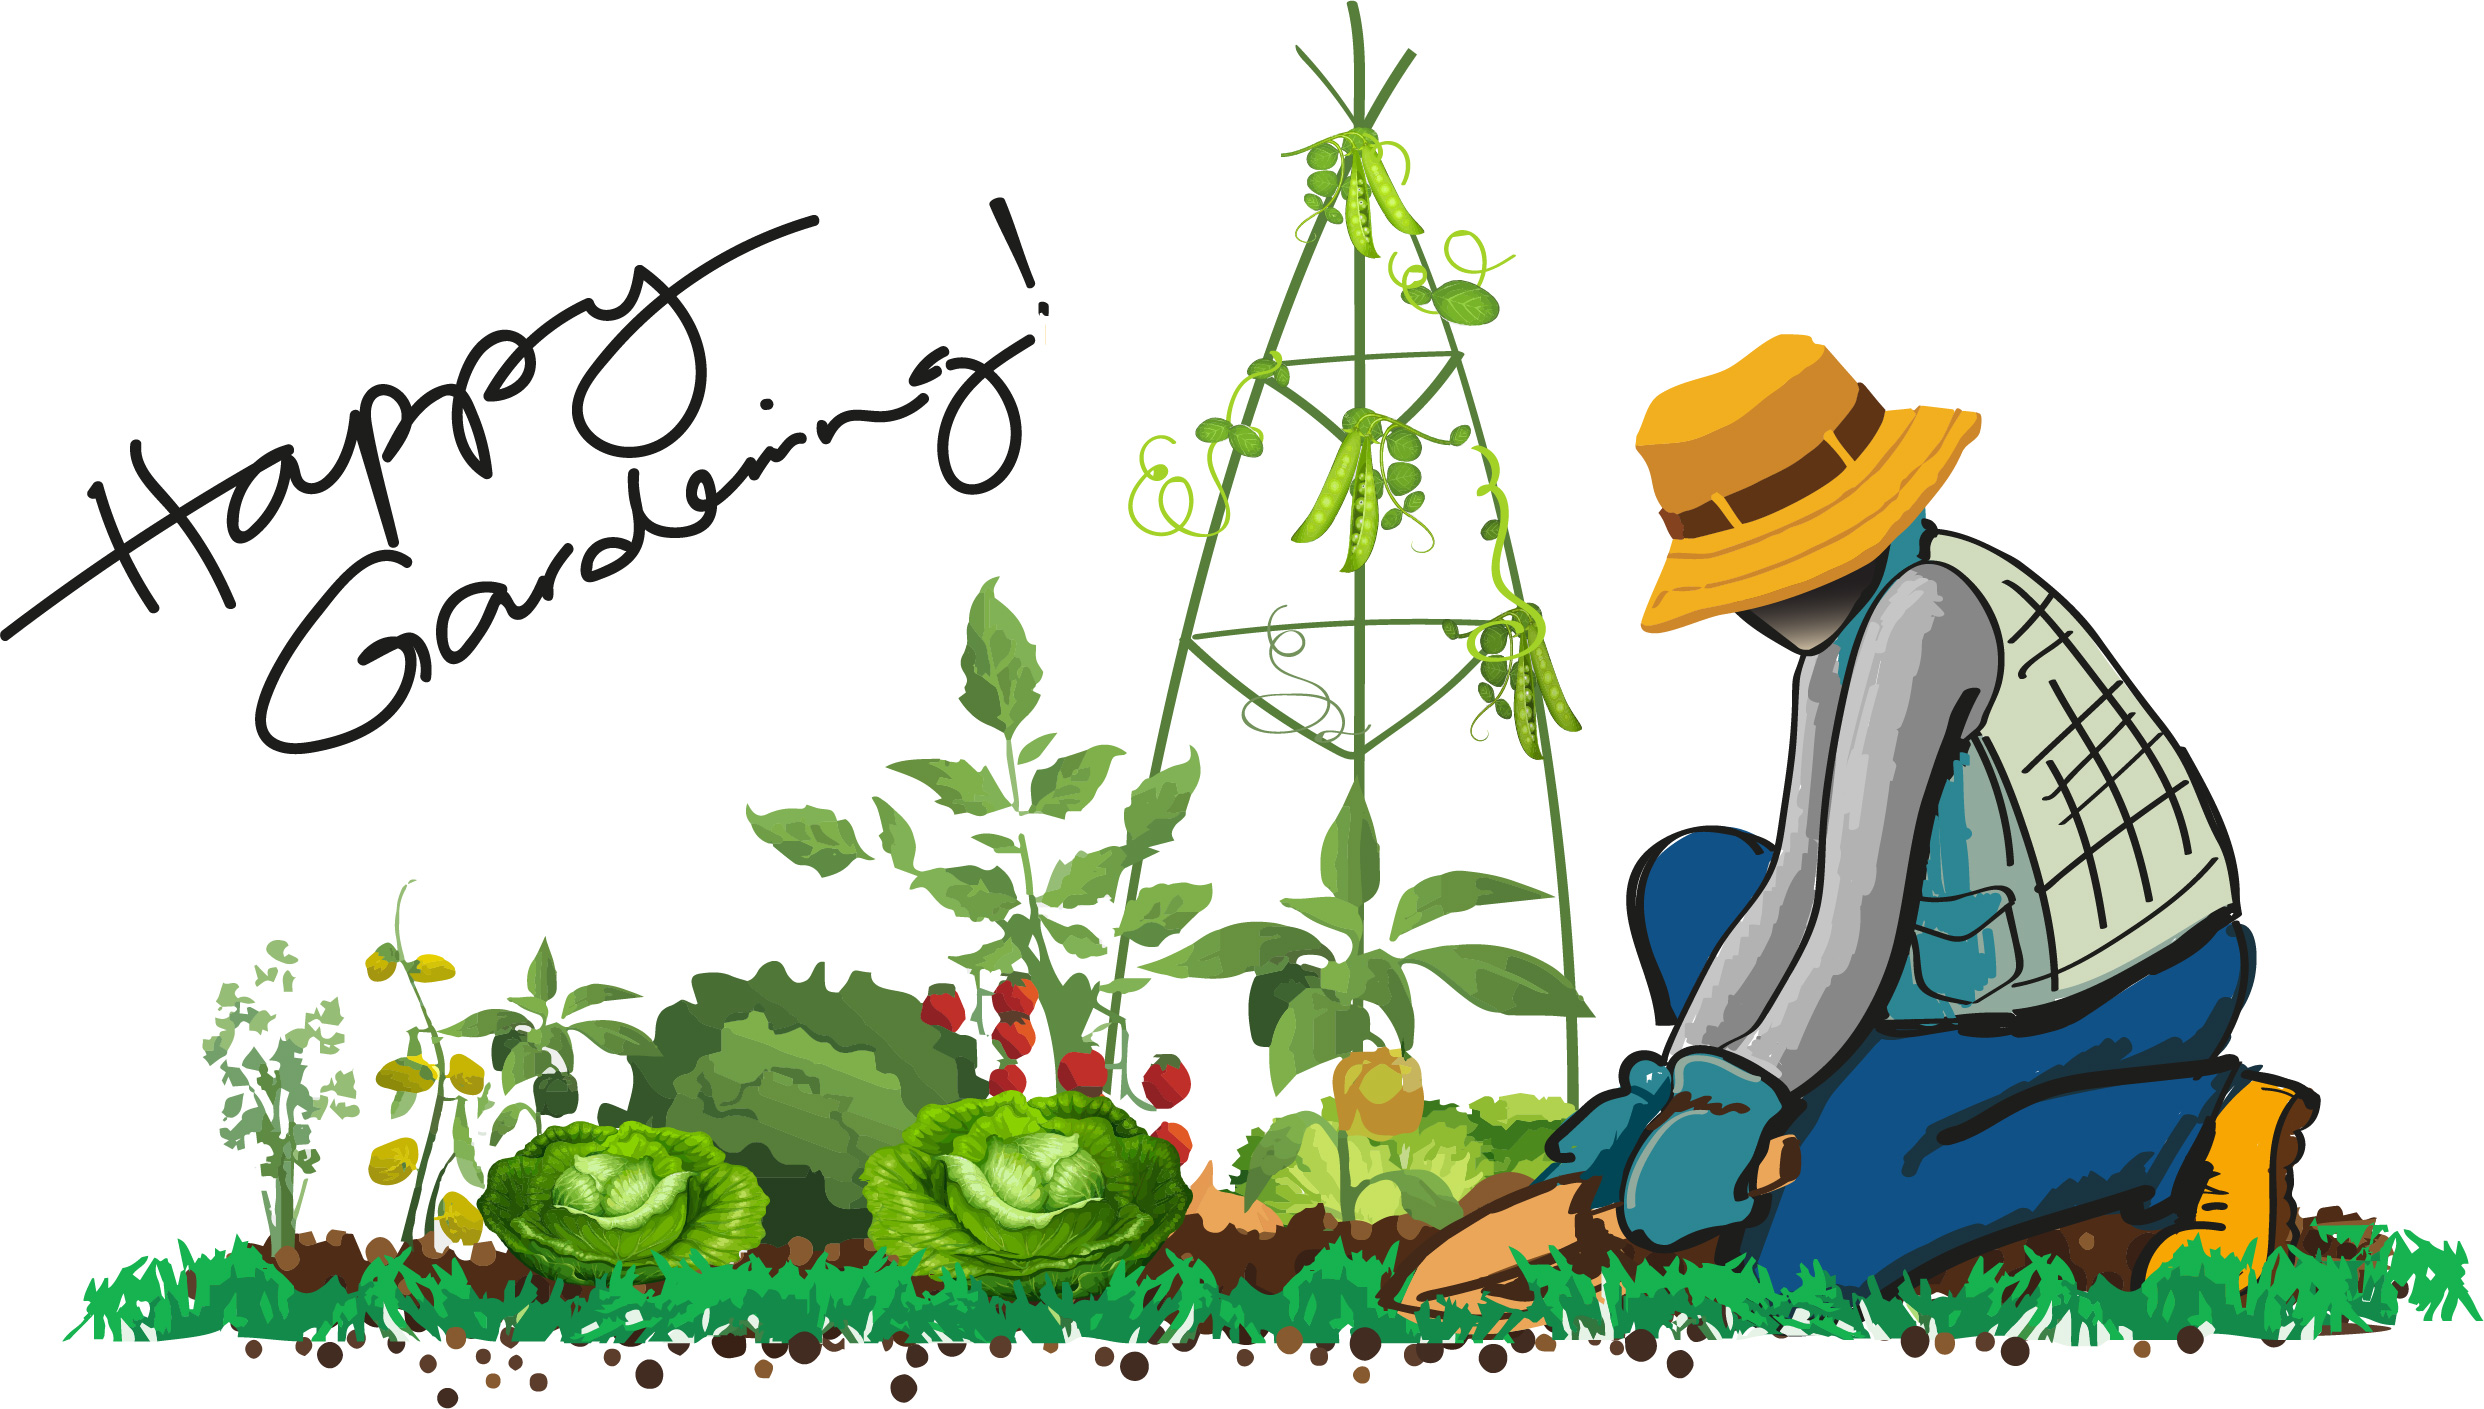 The Gardener illustration